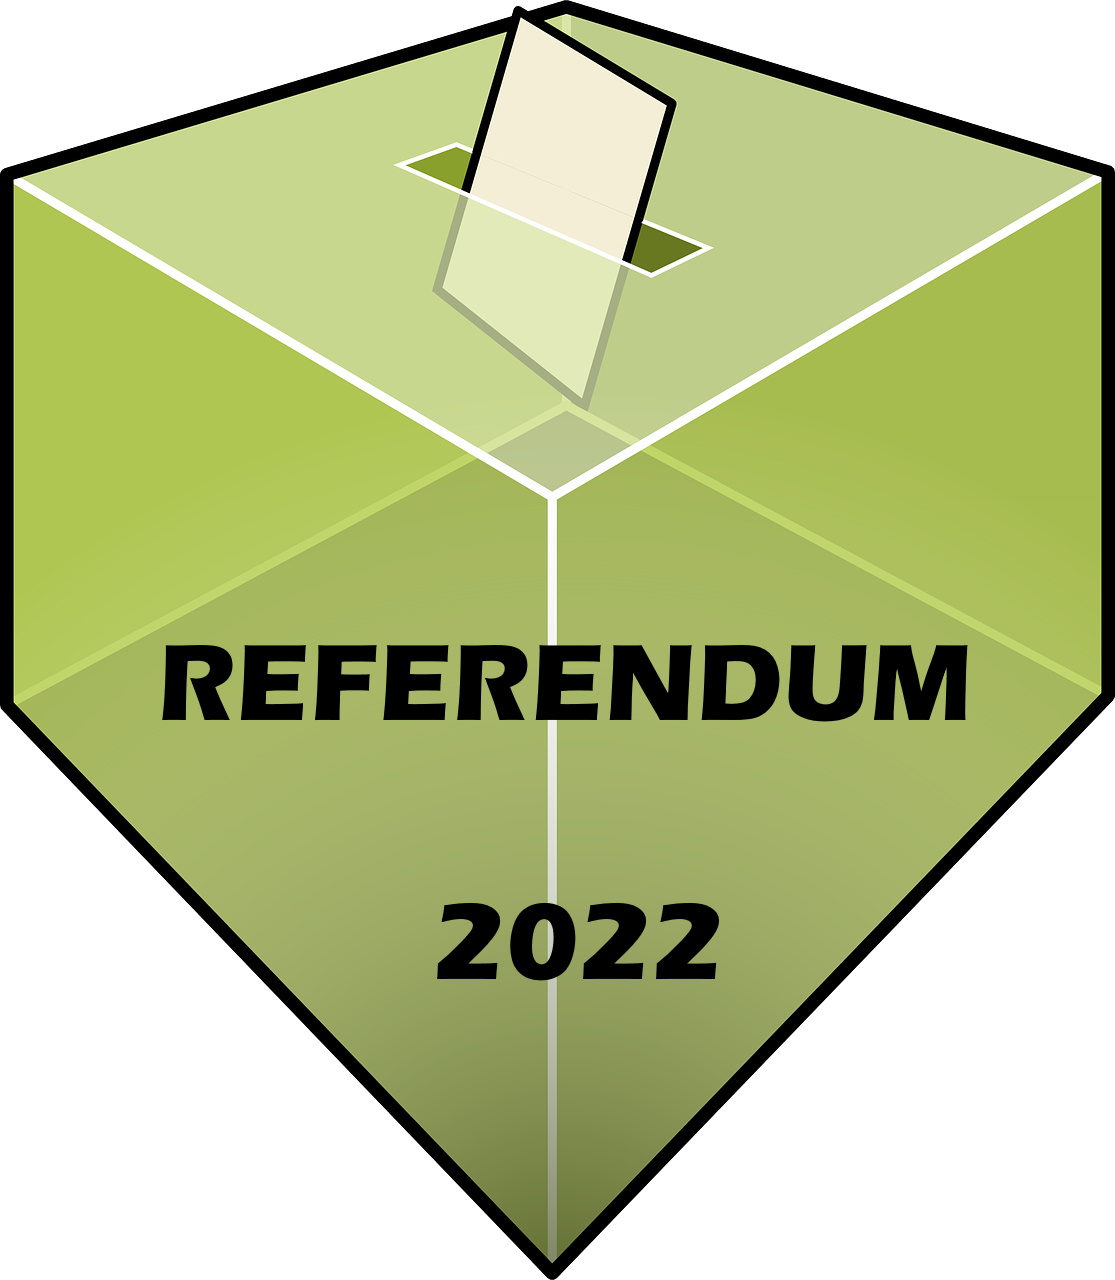 Referendum popolare abrogativo del 12 giugno 2022